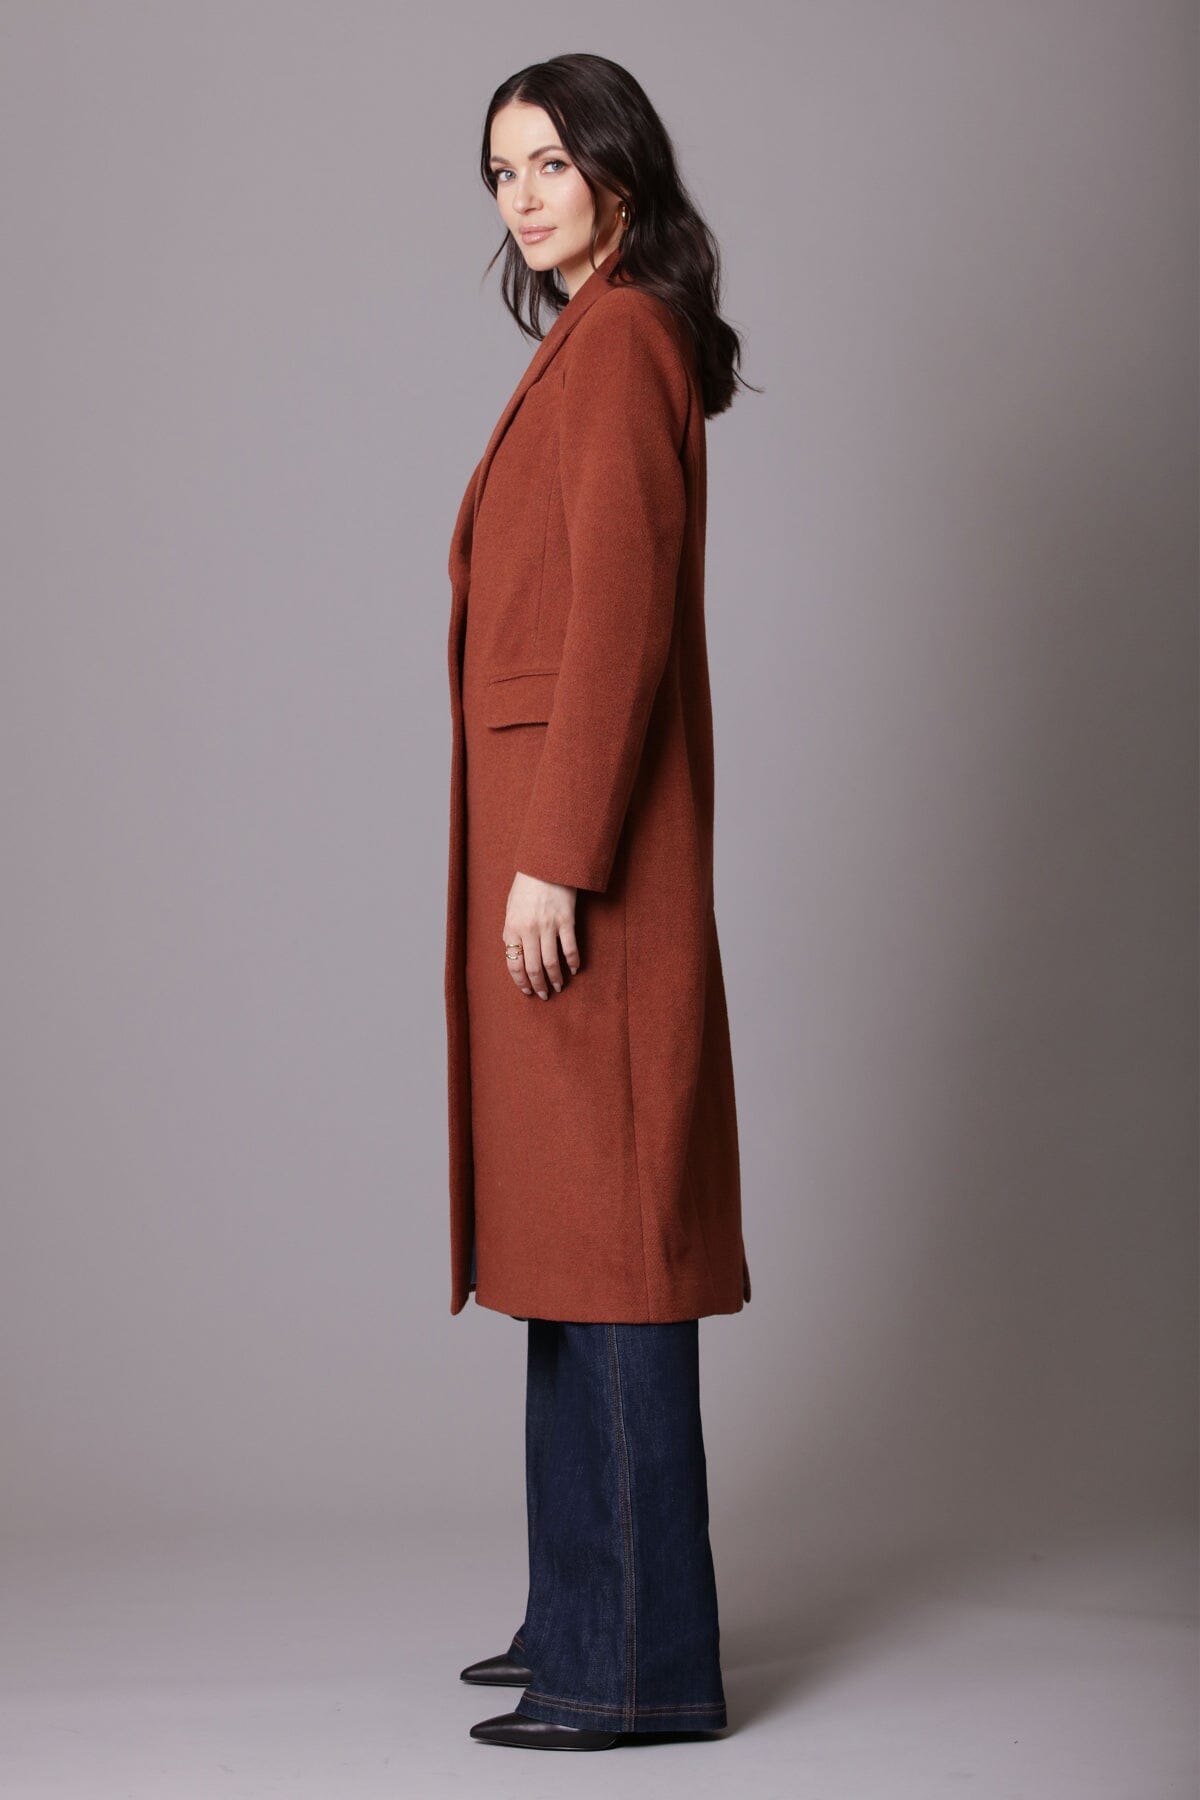 Cinnamon brown wool blend longline blazer coat jacket - women's figure flattering sophisticated long blazers for fall